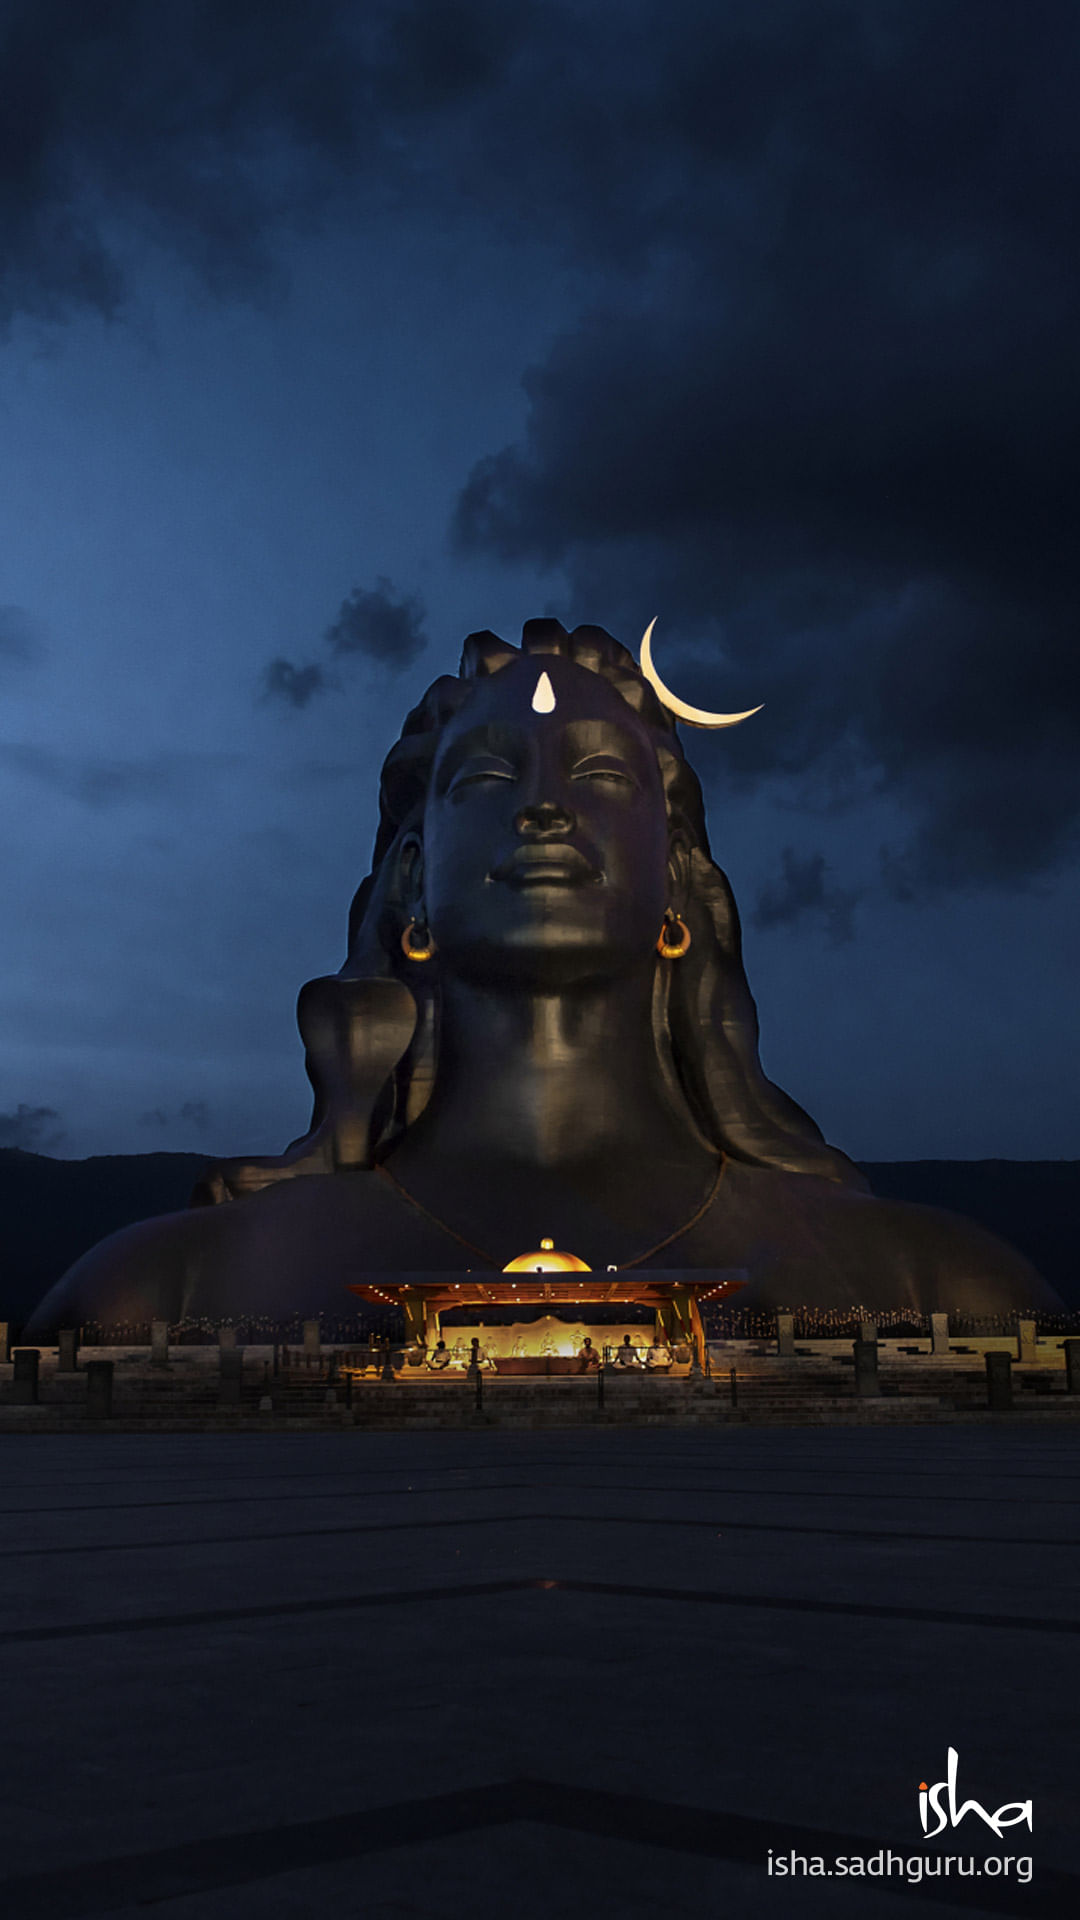 Lord Shiva Hd Wallpaper Free Download3